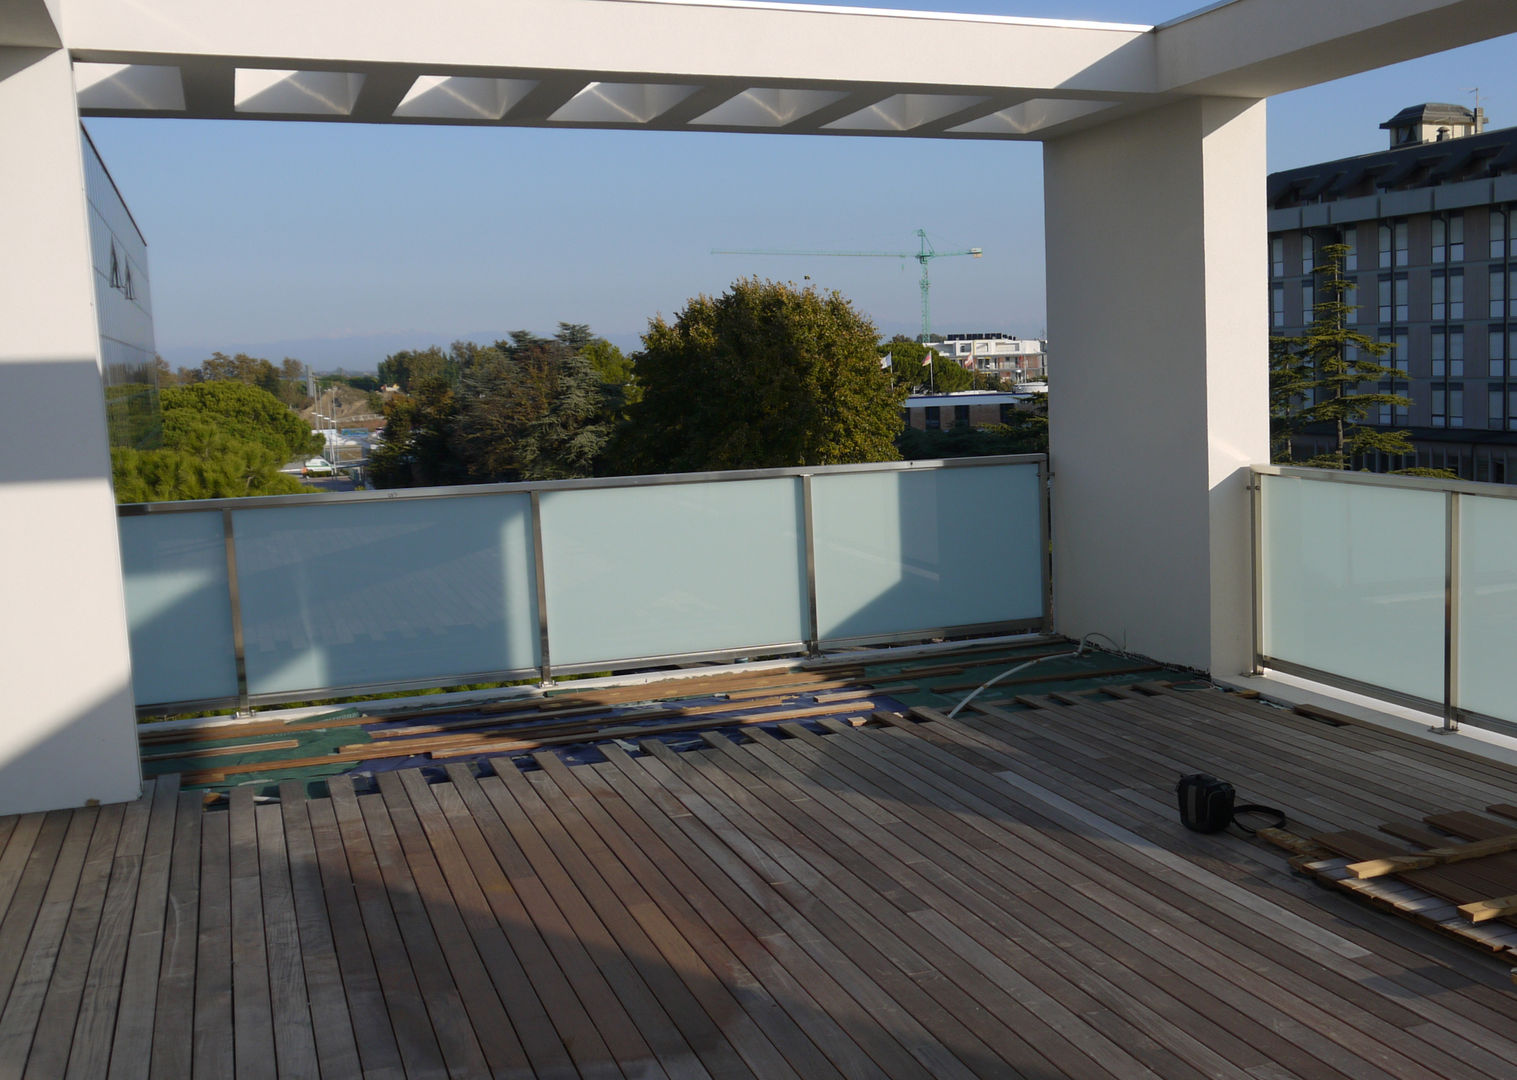 Un attico a Jesolo., ESTERNIDAUTORE ESTERNIDAUTORE Balcones y terrazas de estilo minimalista